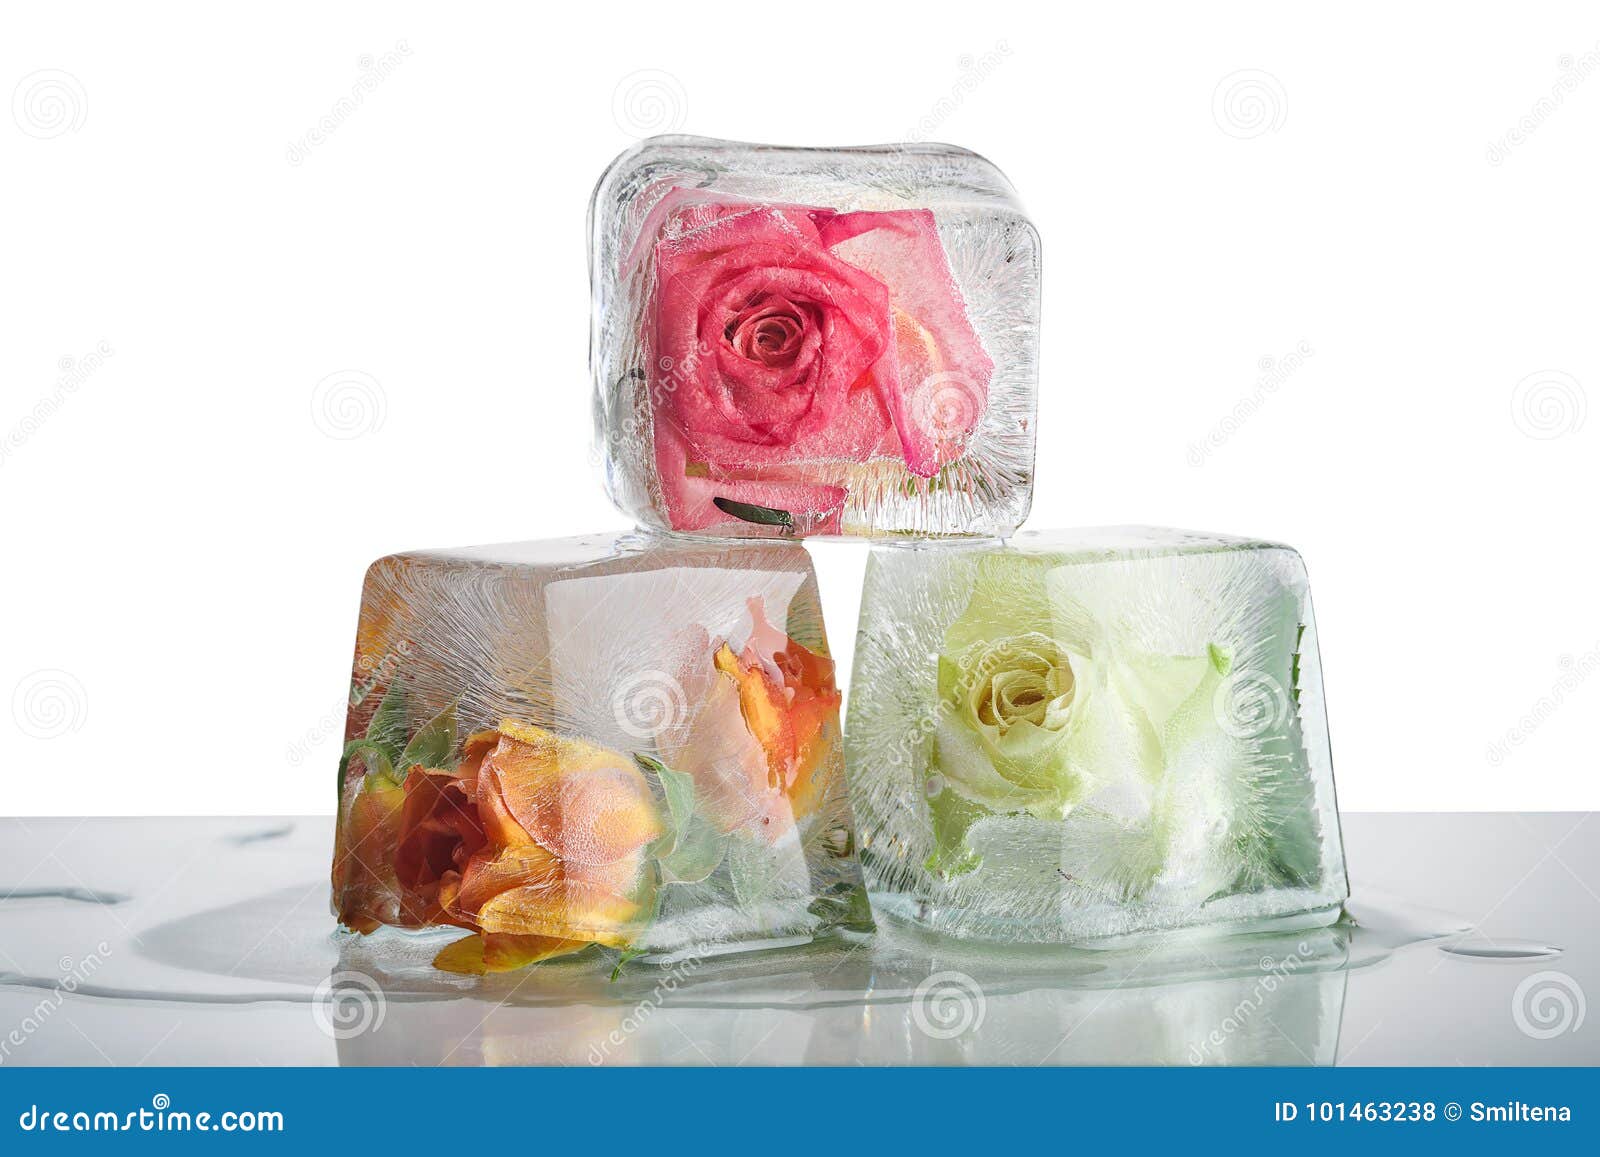 冰块玫瑰背景图 - 堆糖，美图壁纸兴趣社区